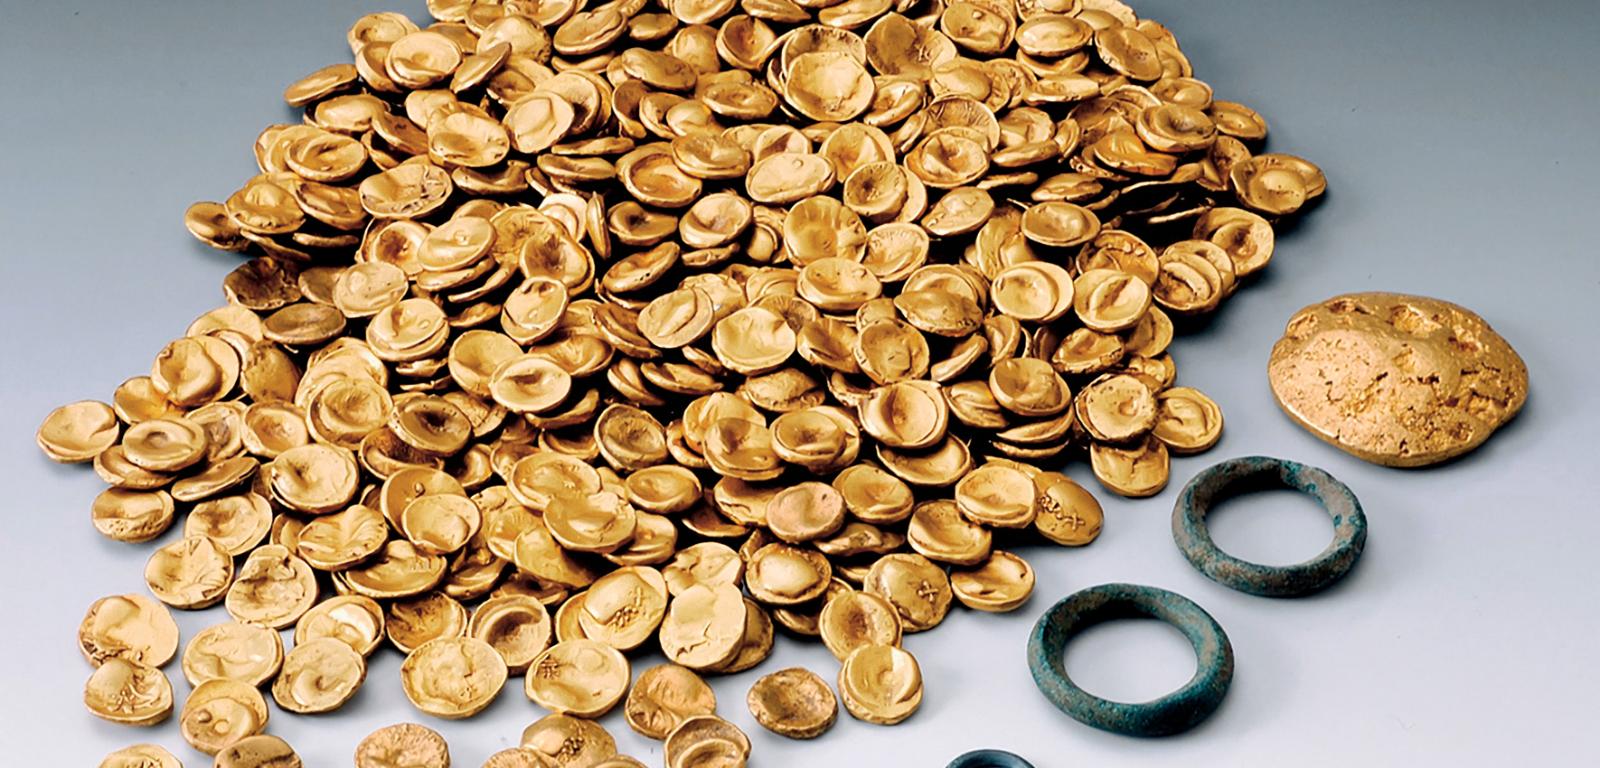 483 złote monety celtyckie, które skradziono z Kelten-Romer Museum w Manching w Bawarii 22 listopada, ważyły 3,724 kg i po przetopieniu mogą dać zysk w wysokości zaledwie 250 tys. euro – dla naukowców są zaś bezcenne.